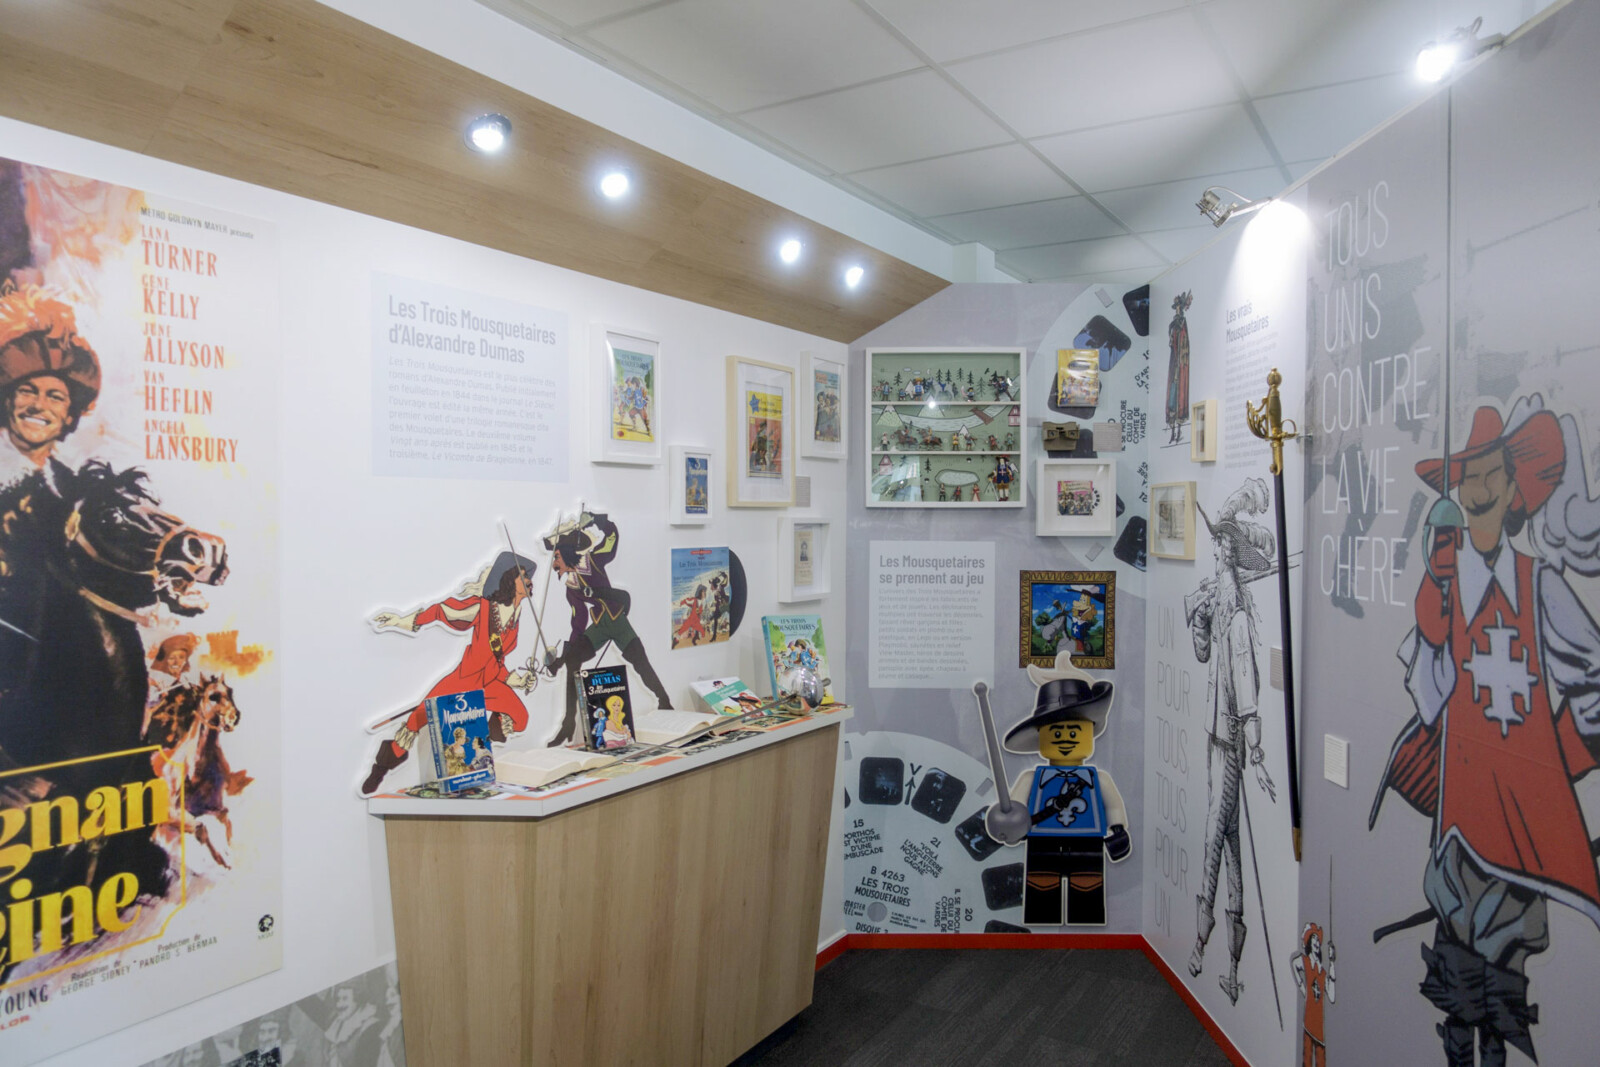 Vue d’ensemble de l’espace dédié à la représentation des Mousquetaires dans la culture populaire : affiche de film, roman, livre-disque, figurines, Lego…